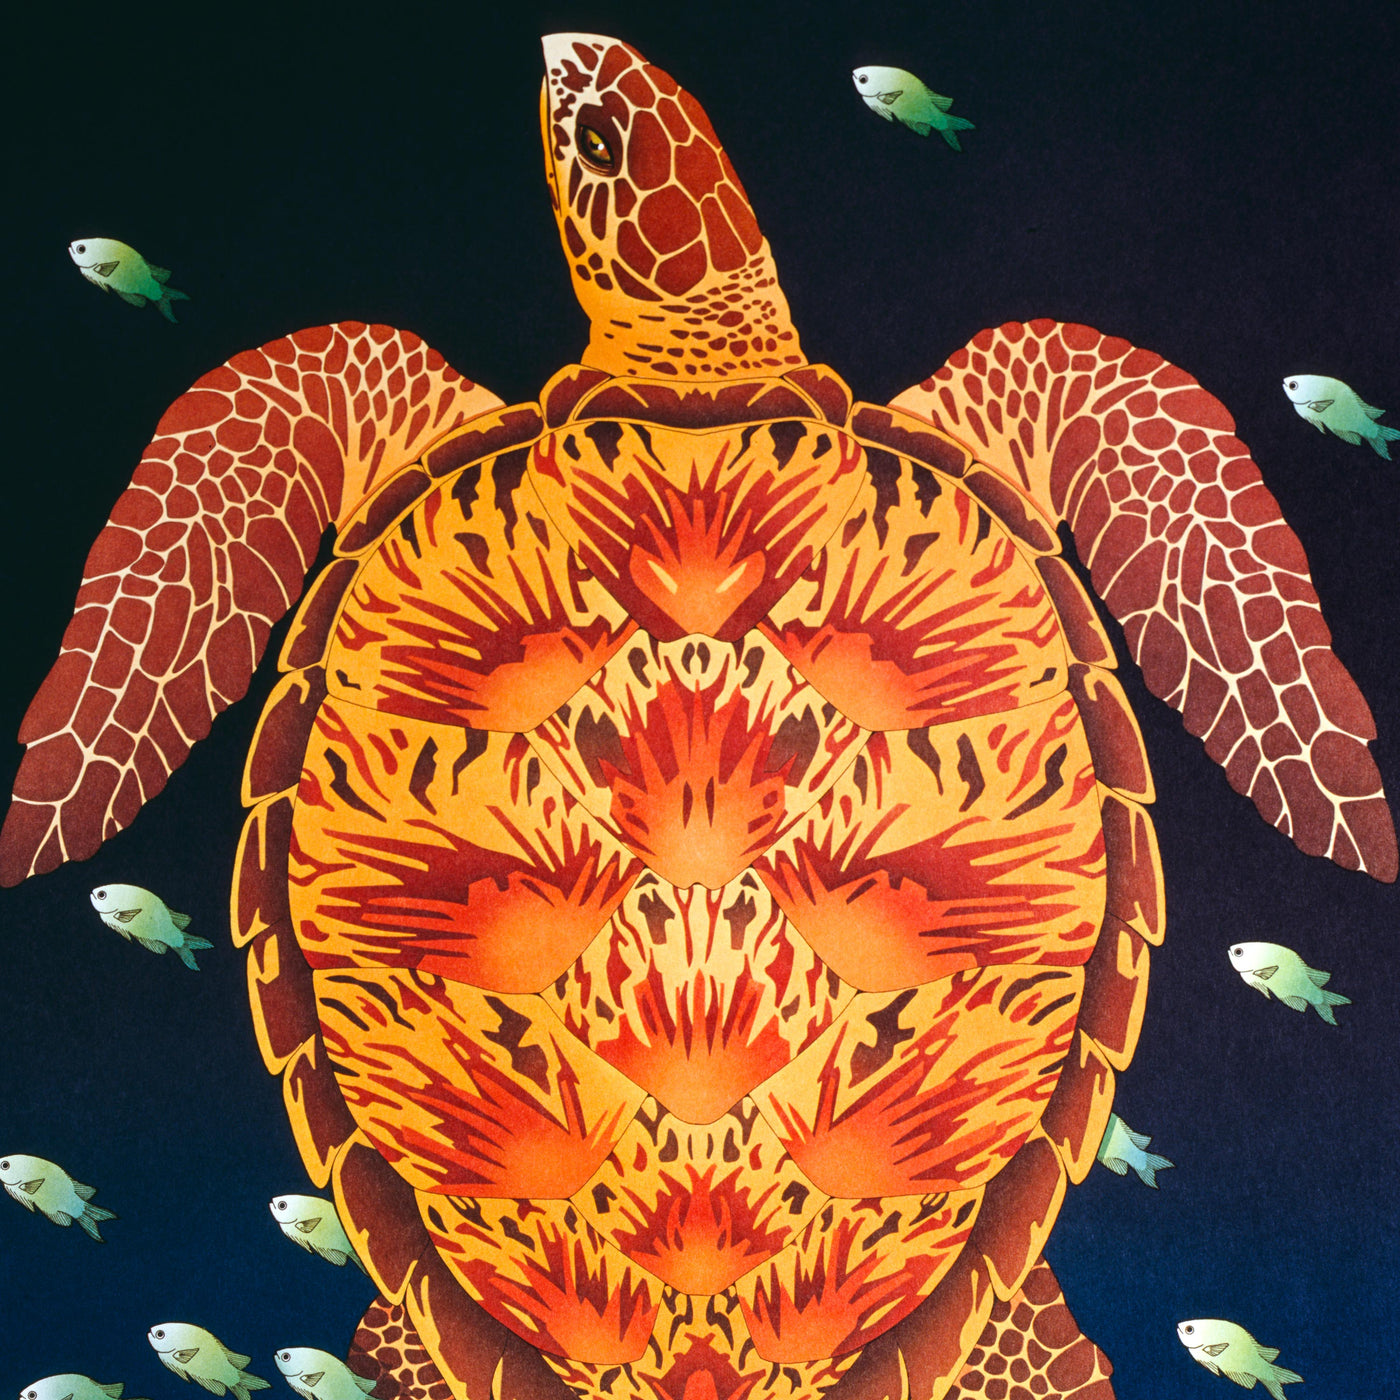 Hawksbill Sea Turtle - by Dan Gilbert